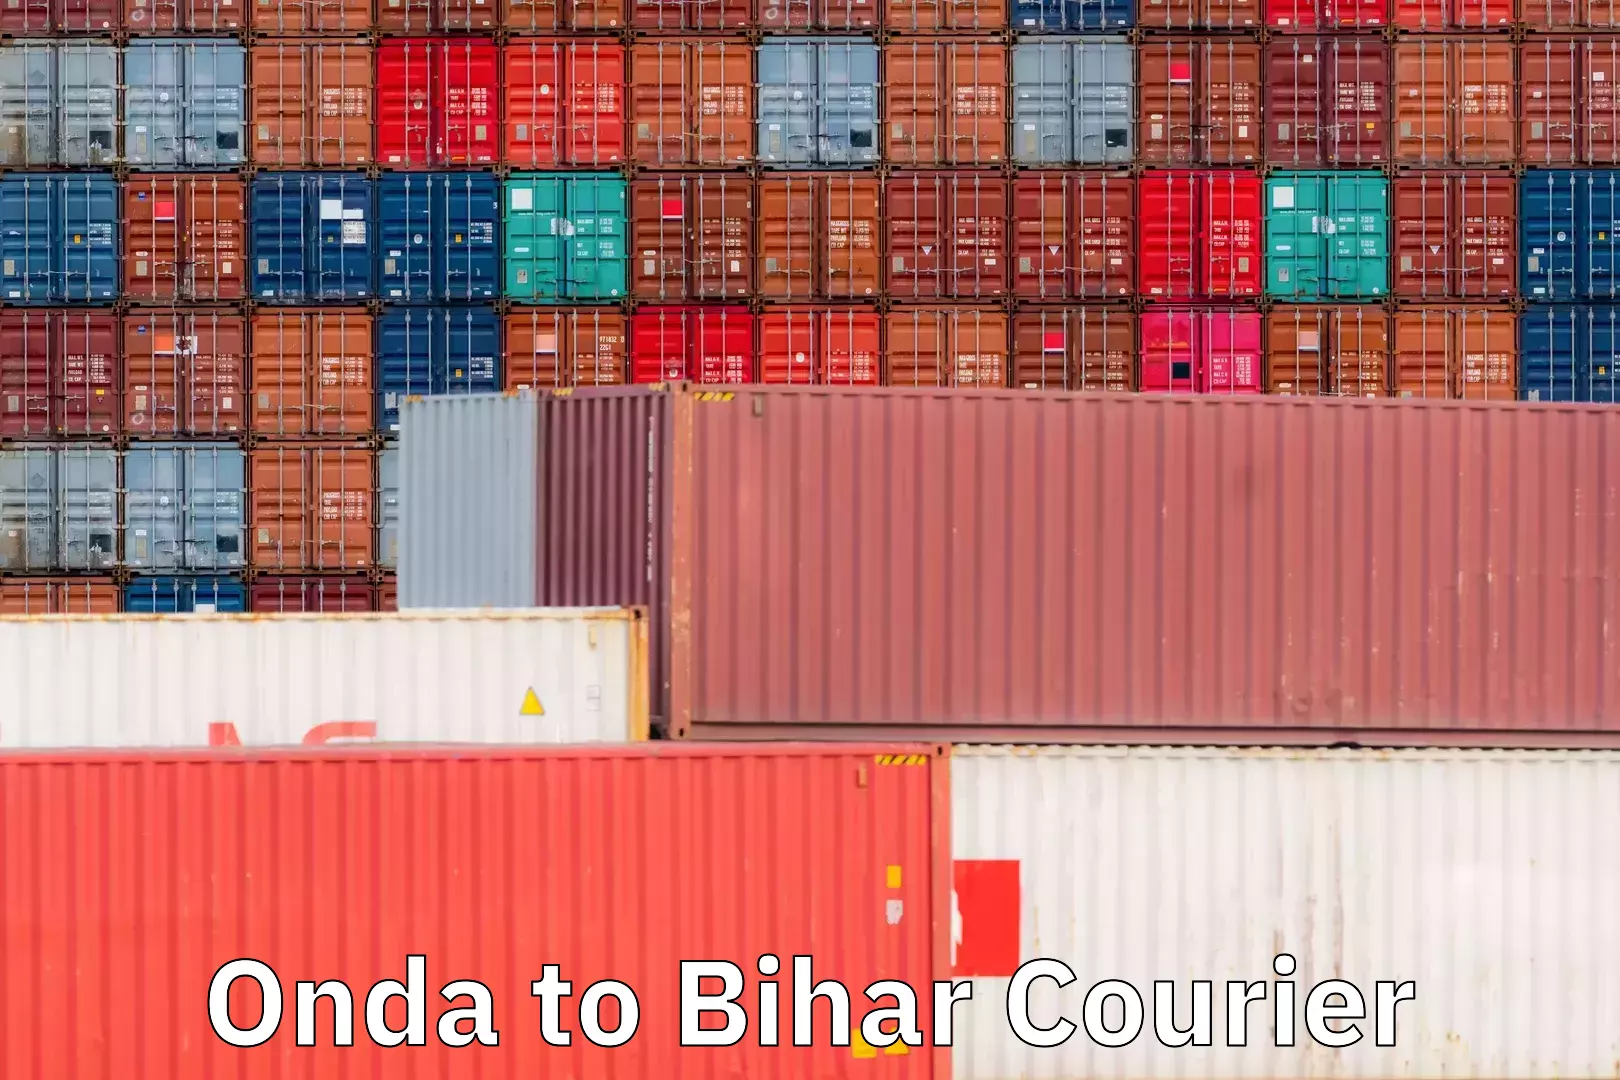 Customer-centric shipping Onda to Bihar